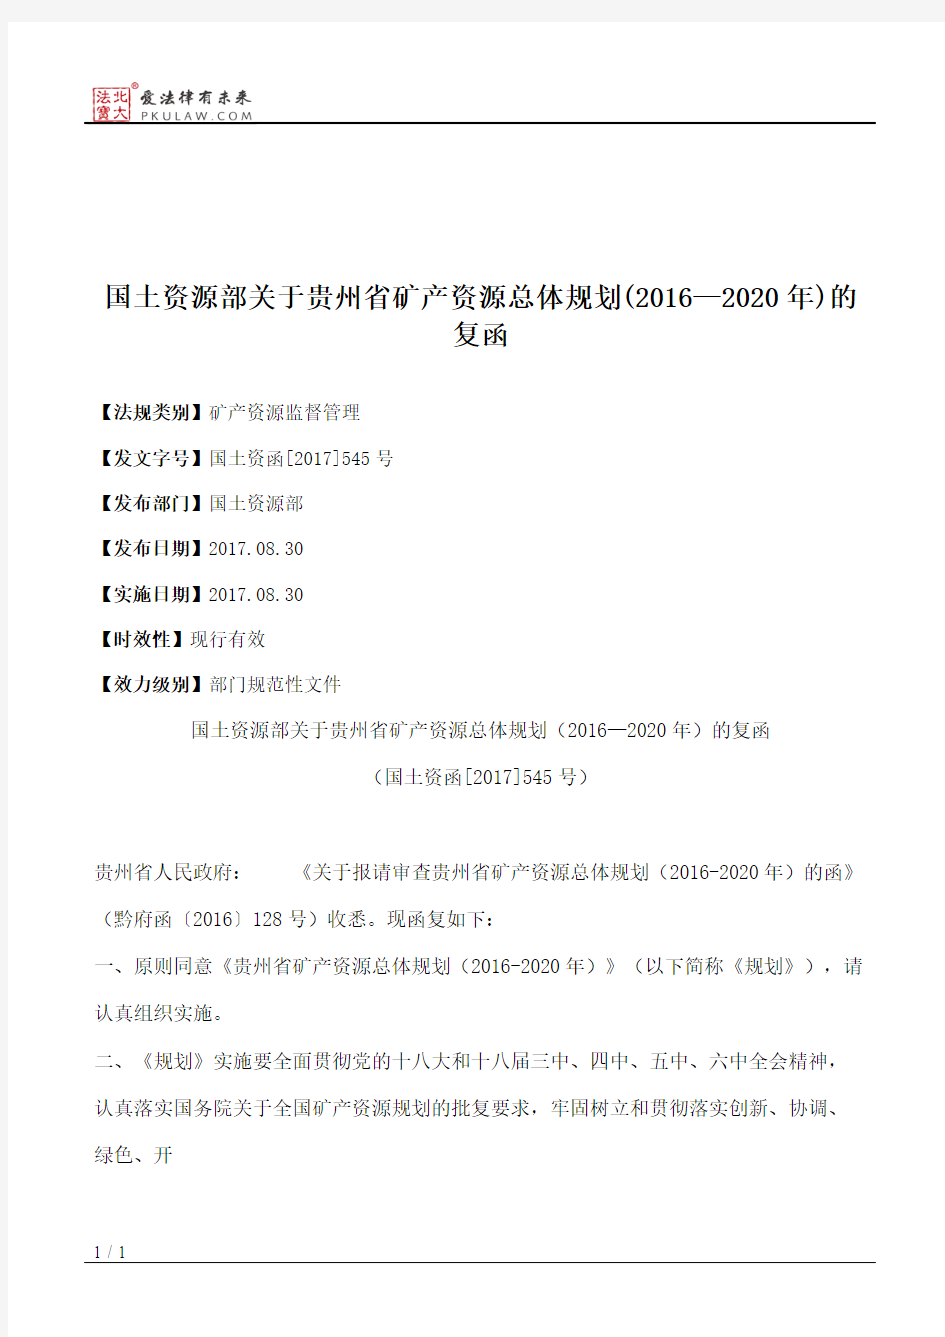 国土资源部关于贵州省矿产资源总体规划(2016—2020年)的复函